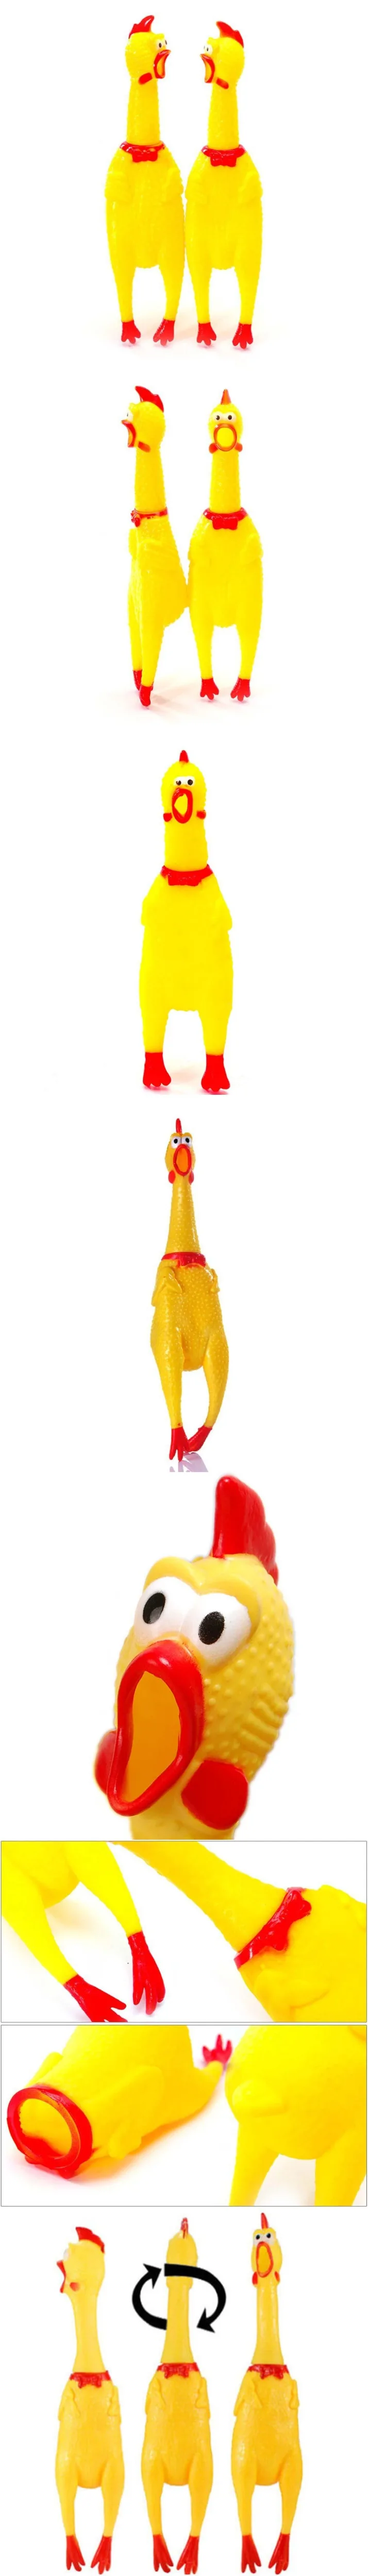 Мини кричать резиновая курица писк игрушка забавный Сжимаемый игрушка со звуком для детей Для женщин Для мужчин антистрессовая игрушка Shrilling кур